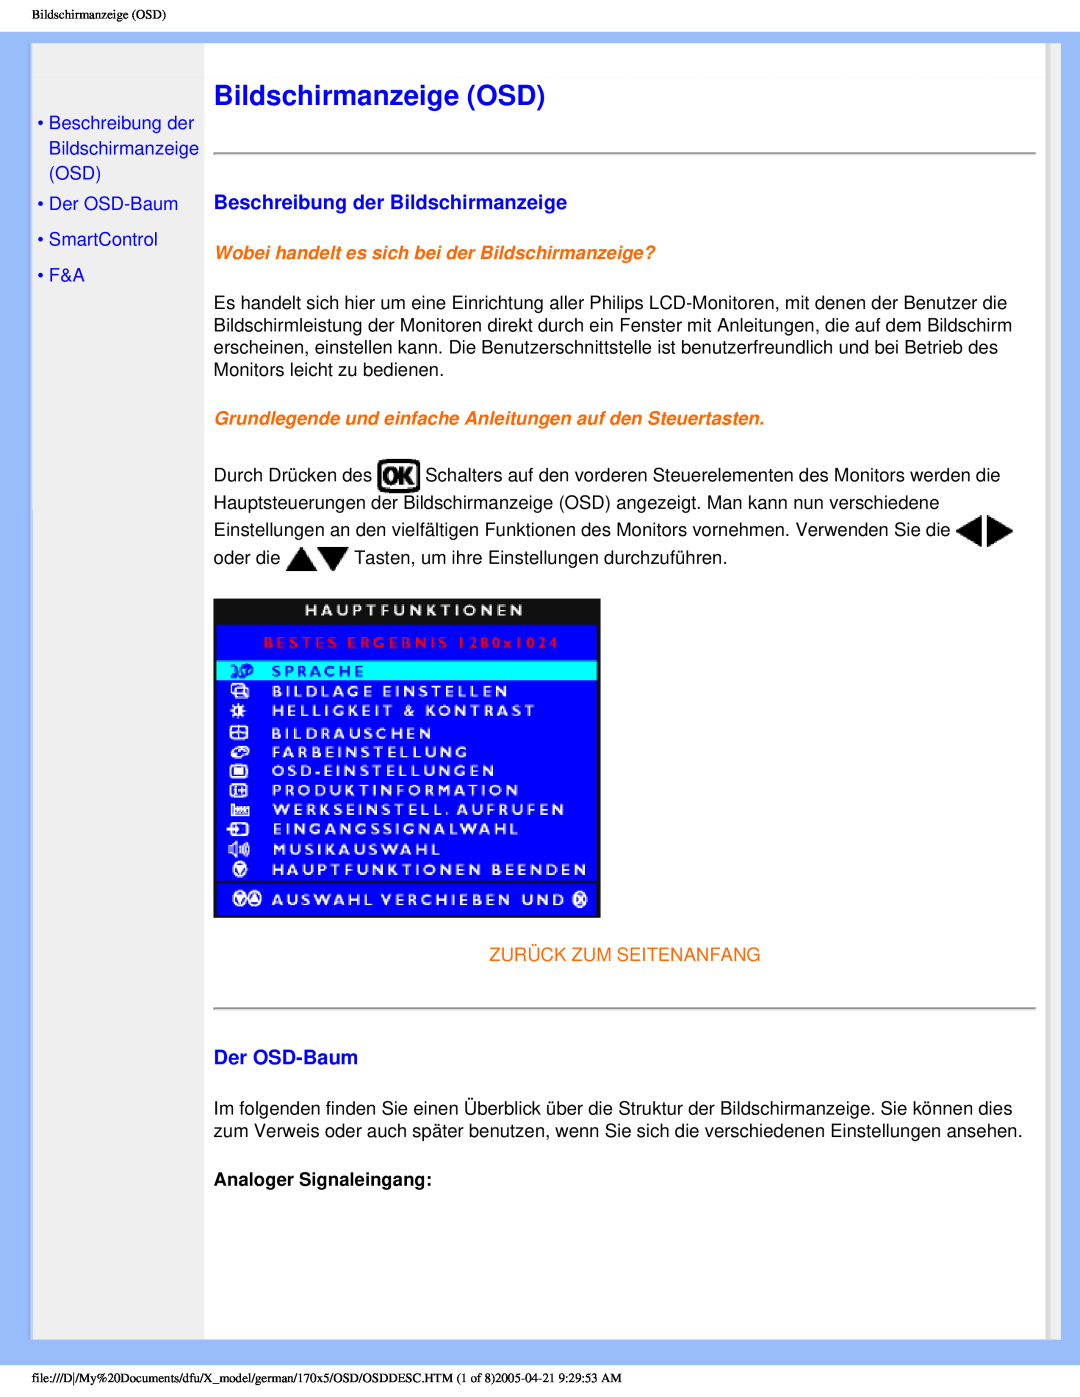 Philips 170X5FB/00 Bildschirmanzeige OSD, Beschreibung der Bildschirmanzeige, Der OSD-Baum, Zurück Zum Seitenanfang 